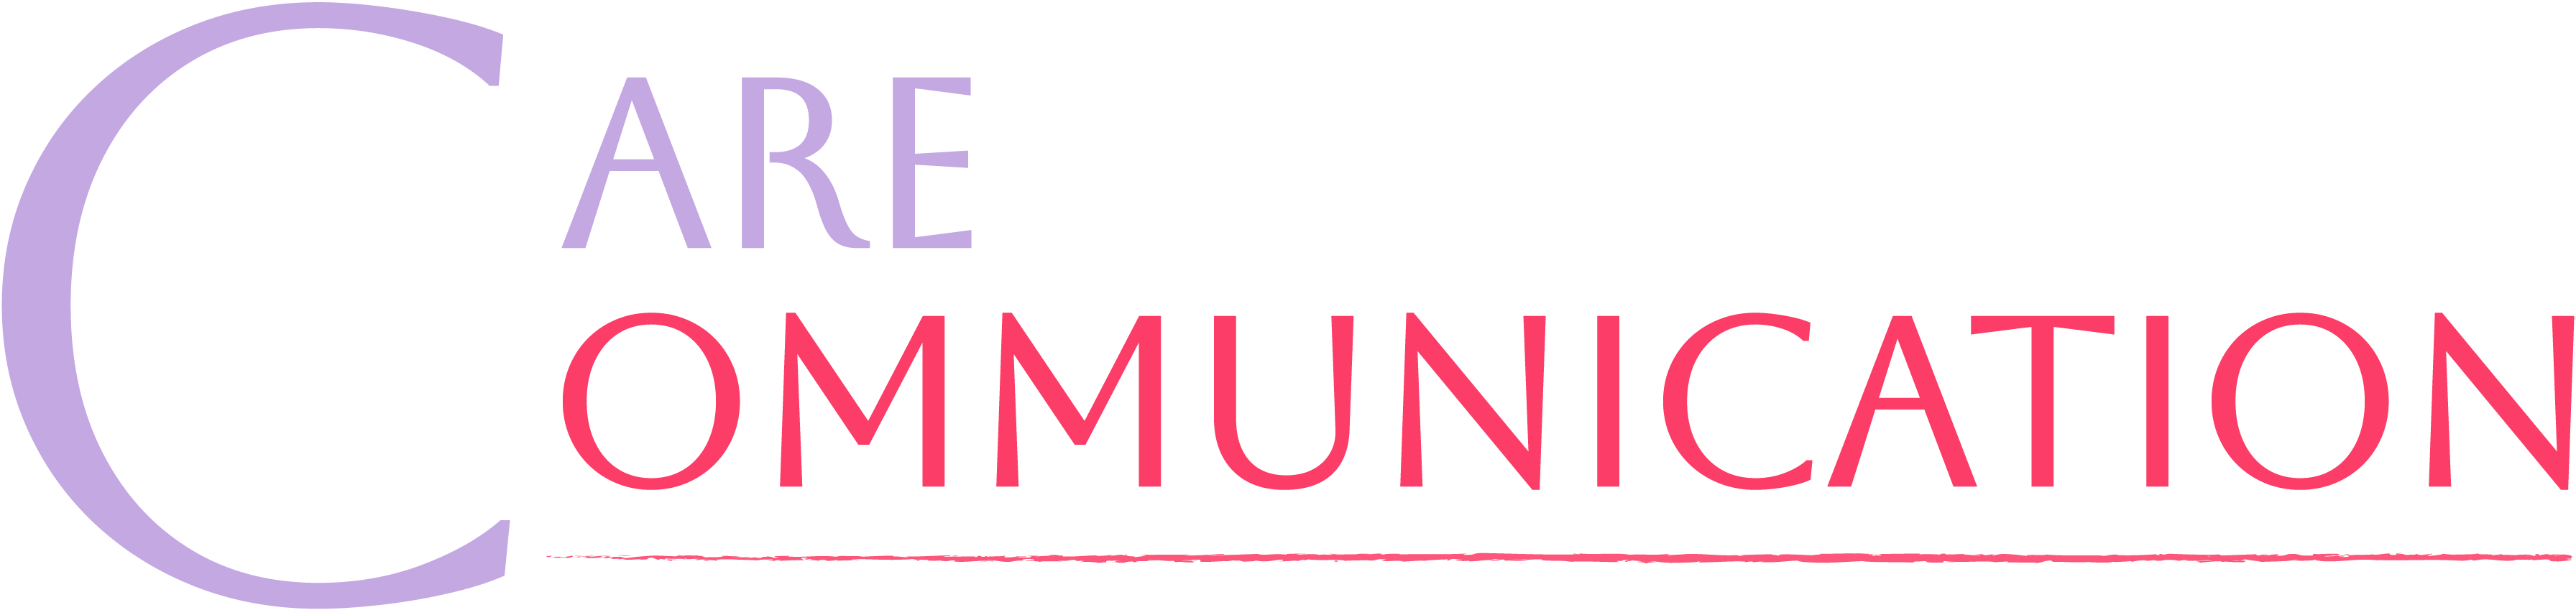 Logo de l'agence Care Communication